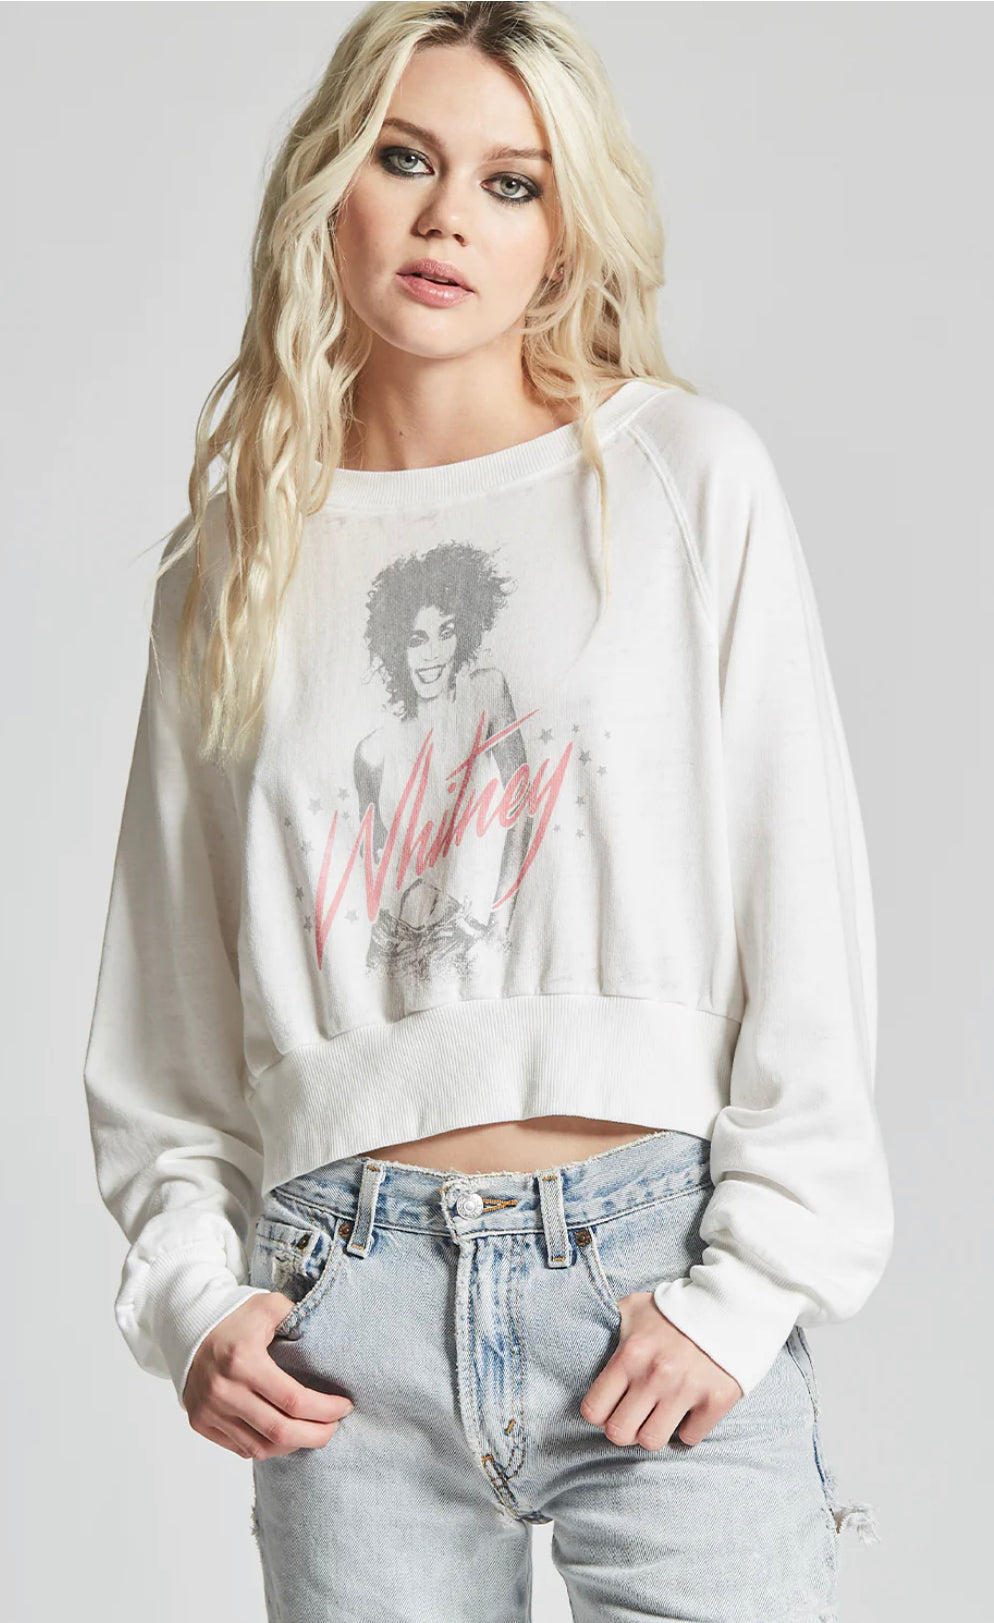 Whitney Houston Cropped Sweatshirt